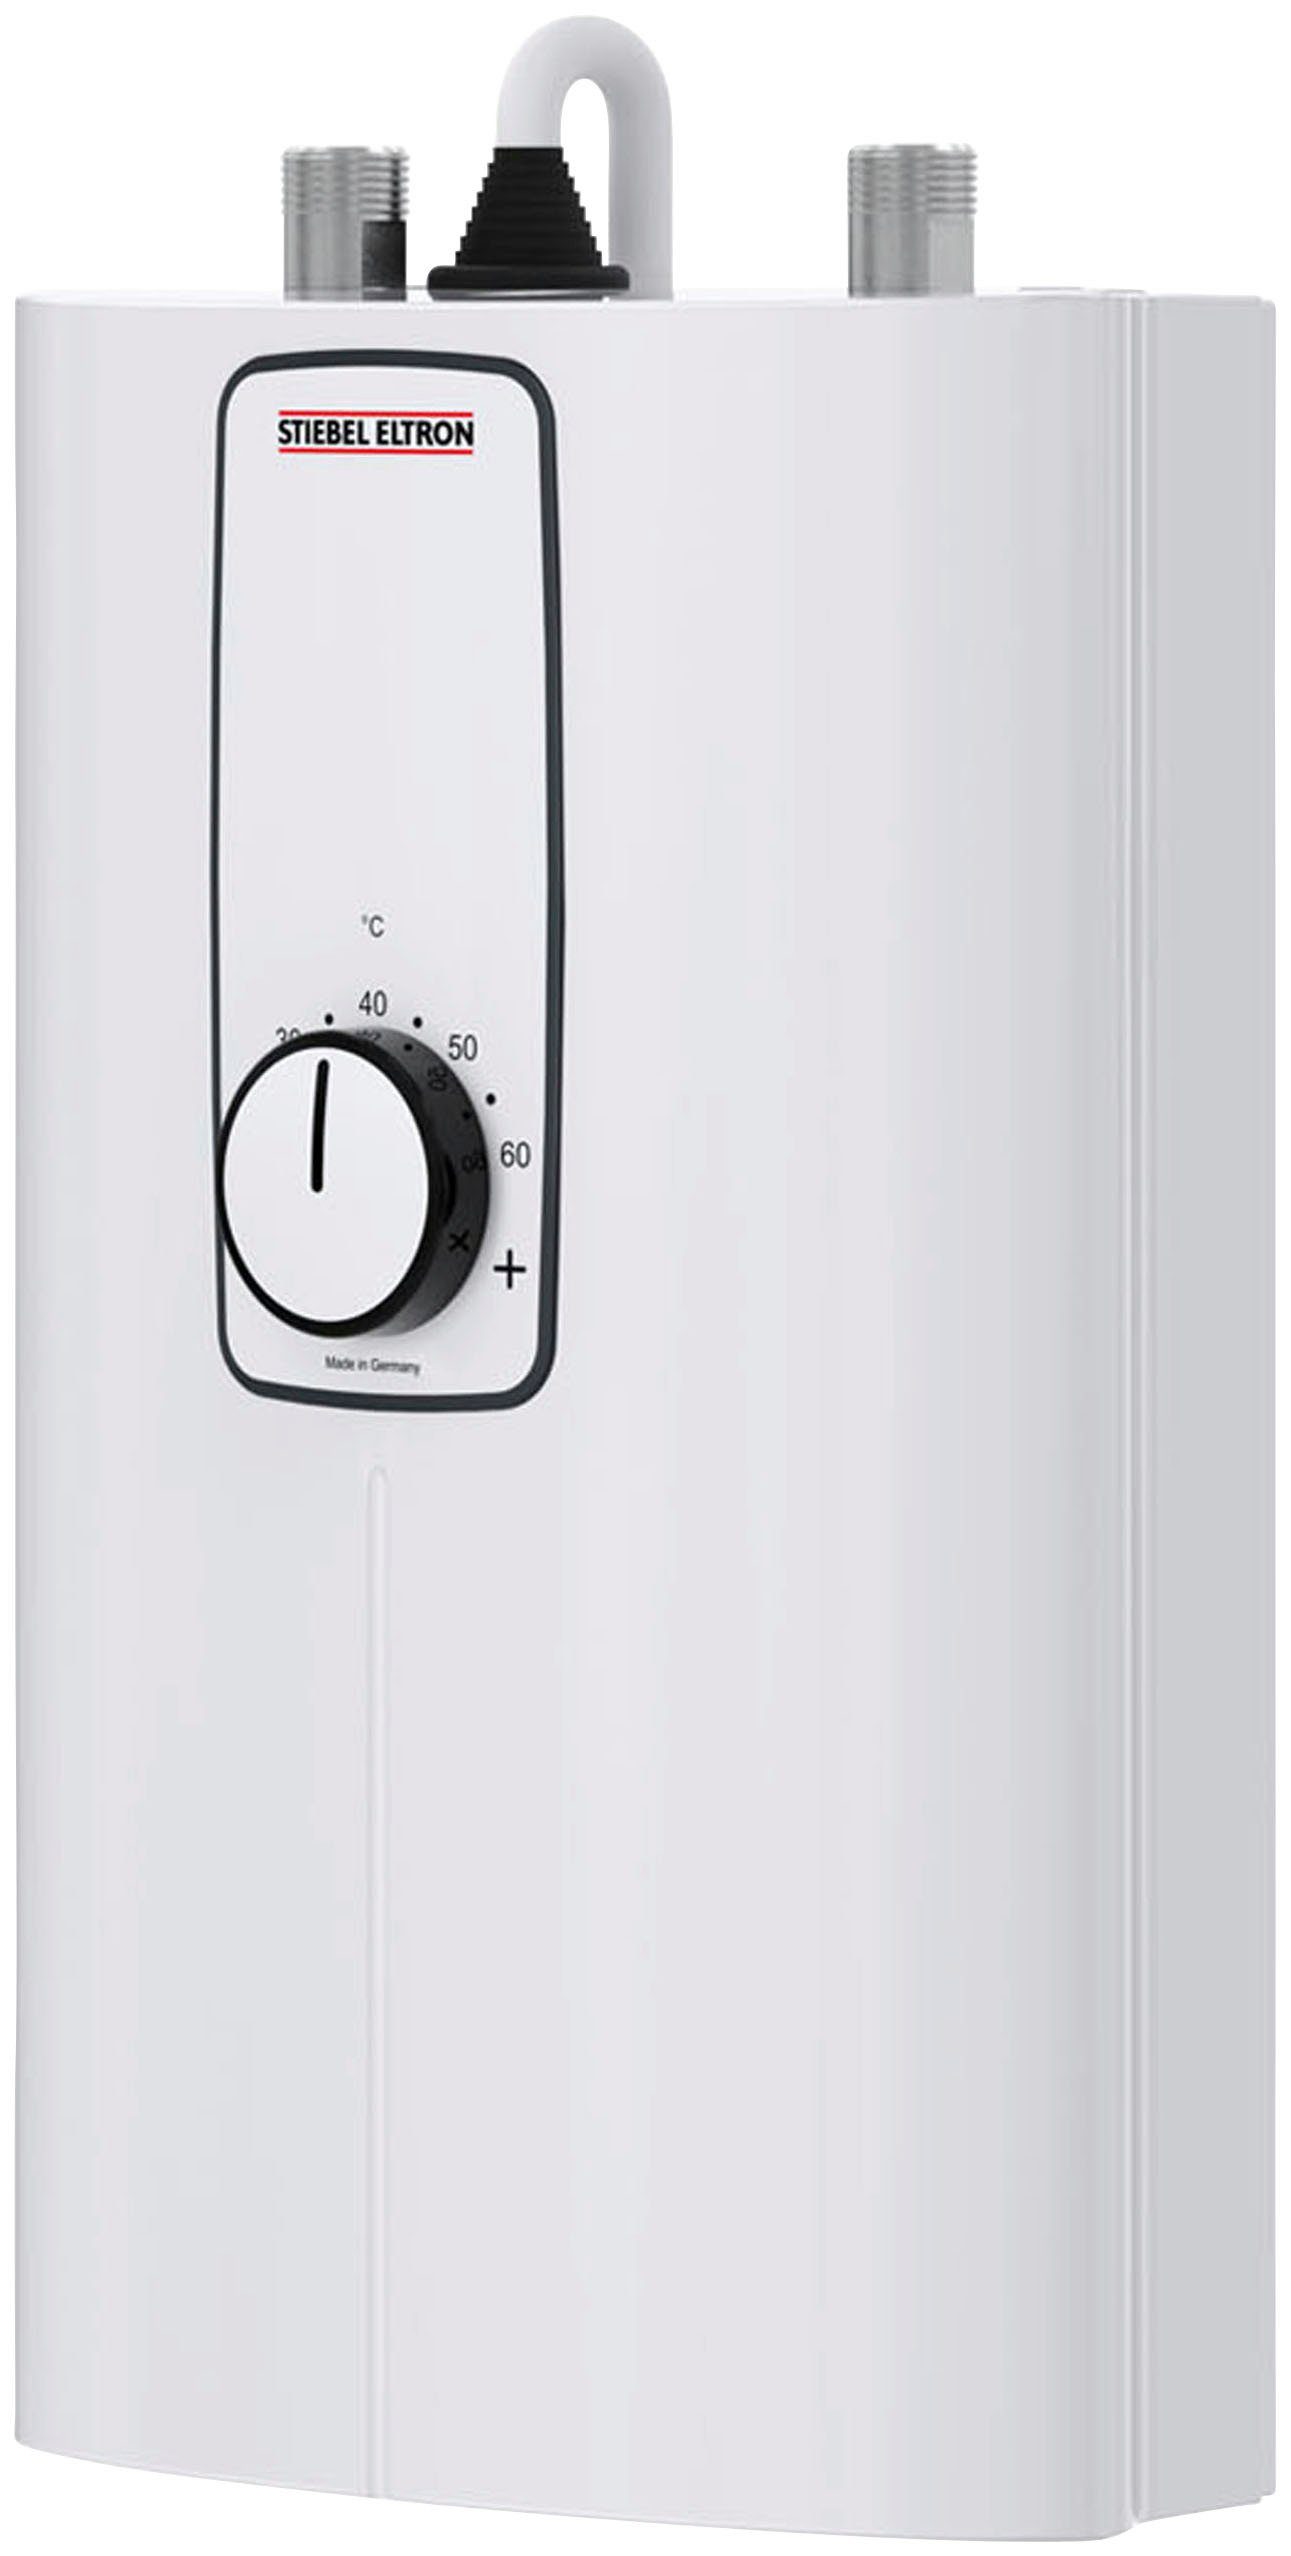 STIEBEL ELTRON Kompakt-Durchlauferhitzer DCE 11/13 kW umschaltbar für die Küche, elektronisch, min. 20 °C, max. 60 °C, 3i Technologie für konstante Warmwassertemperatur, platzsparend